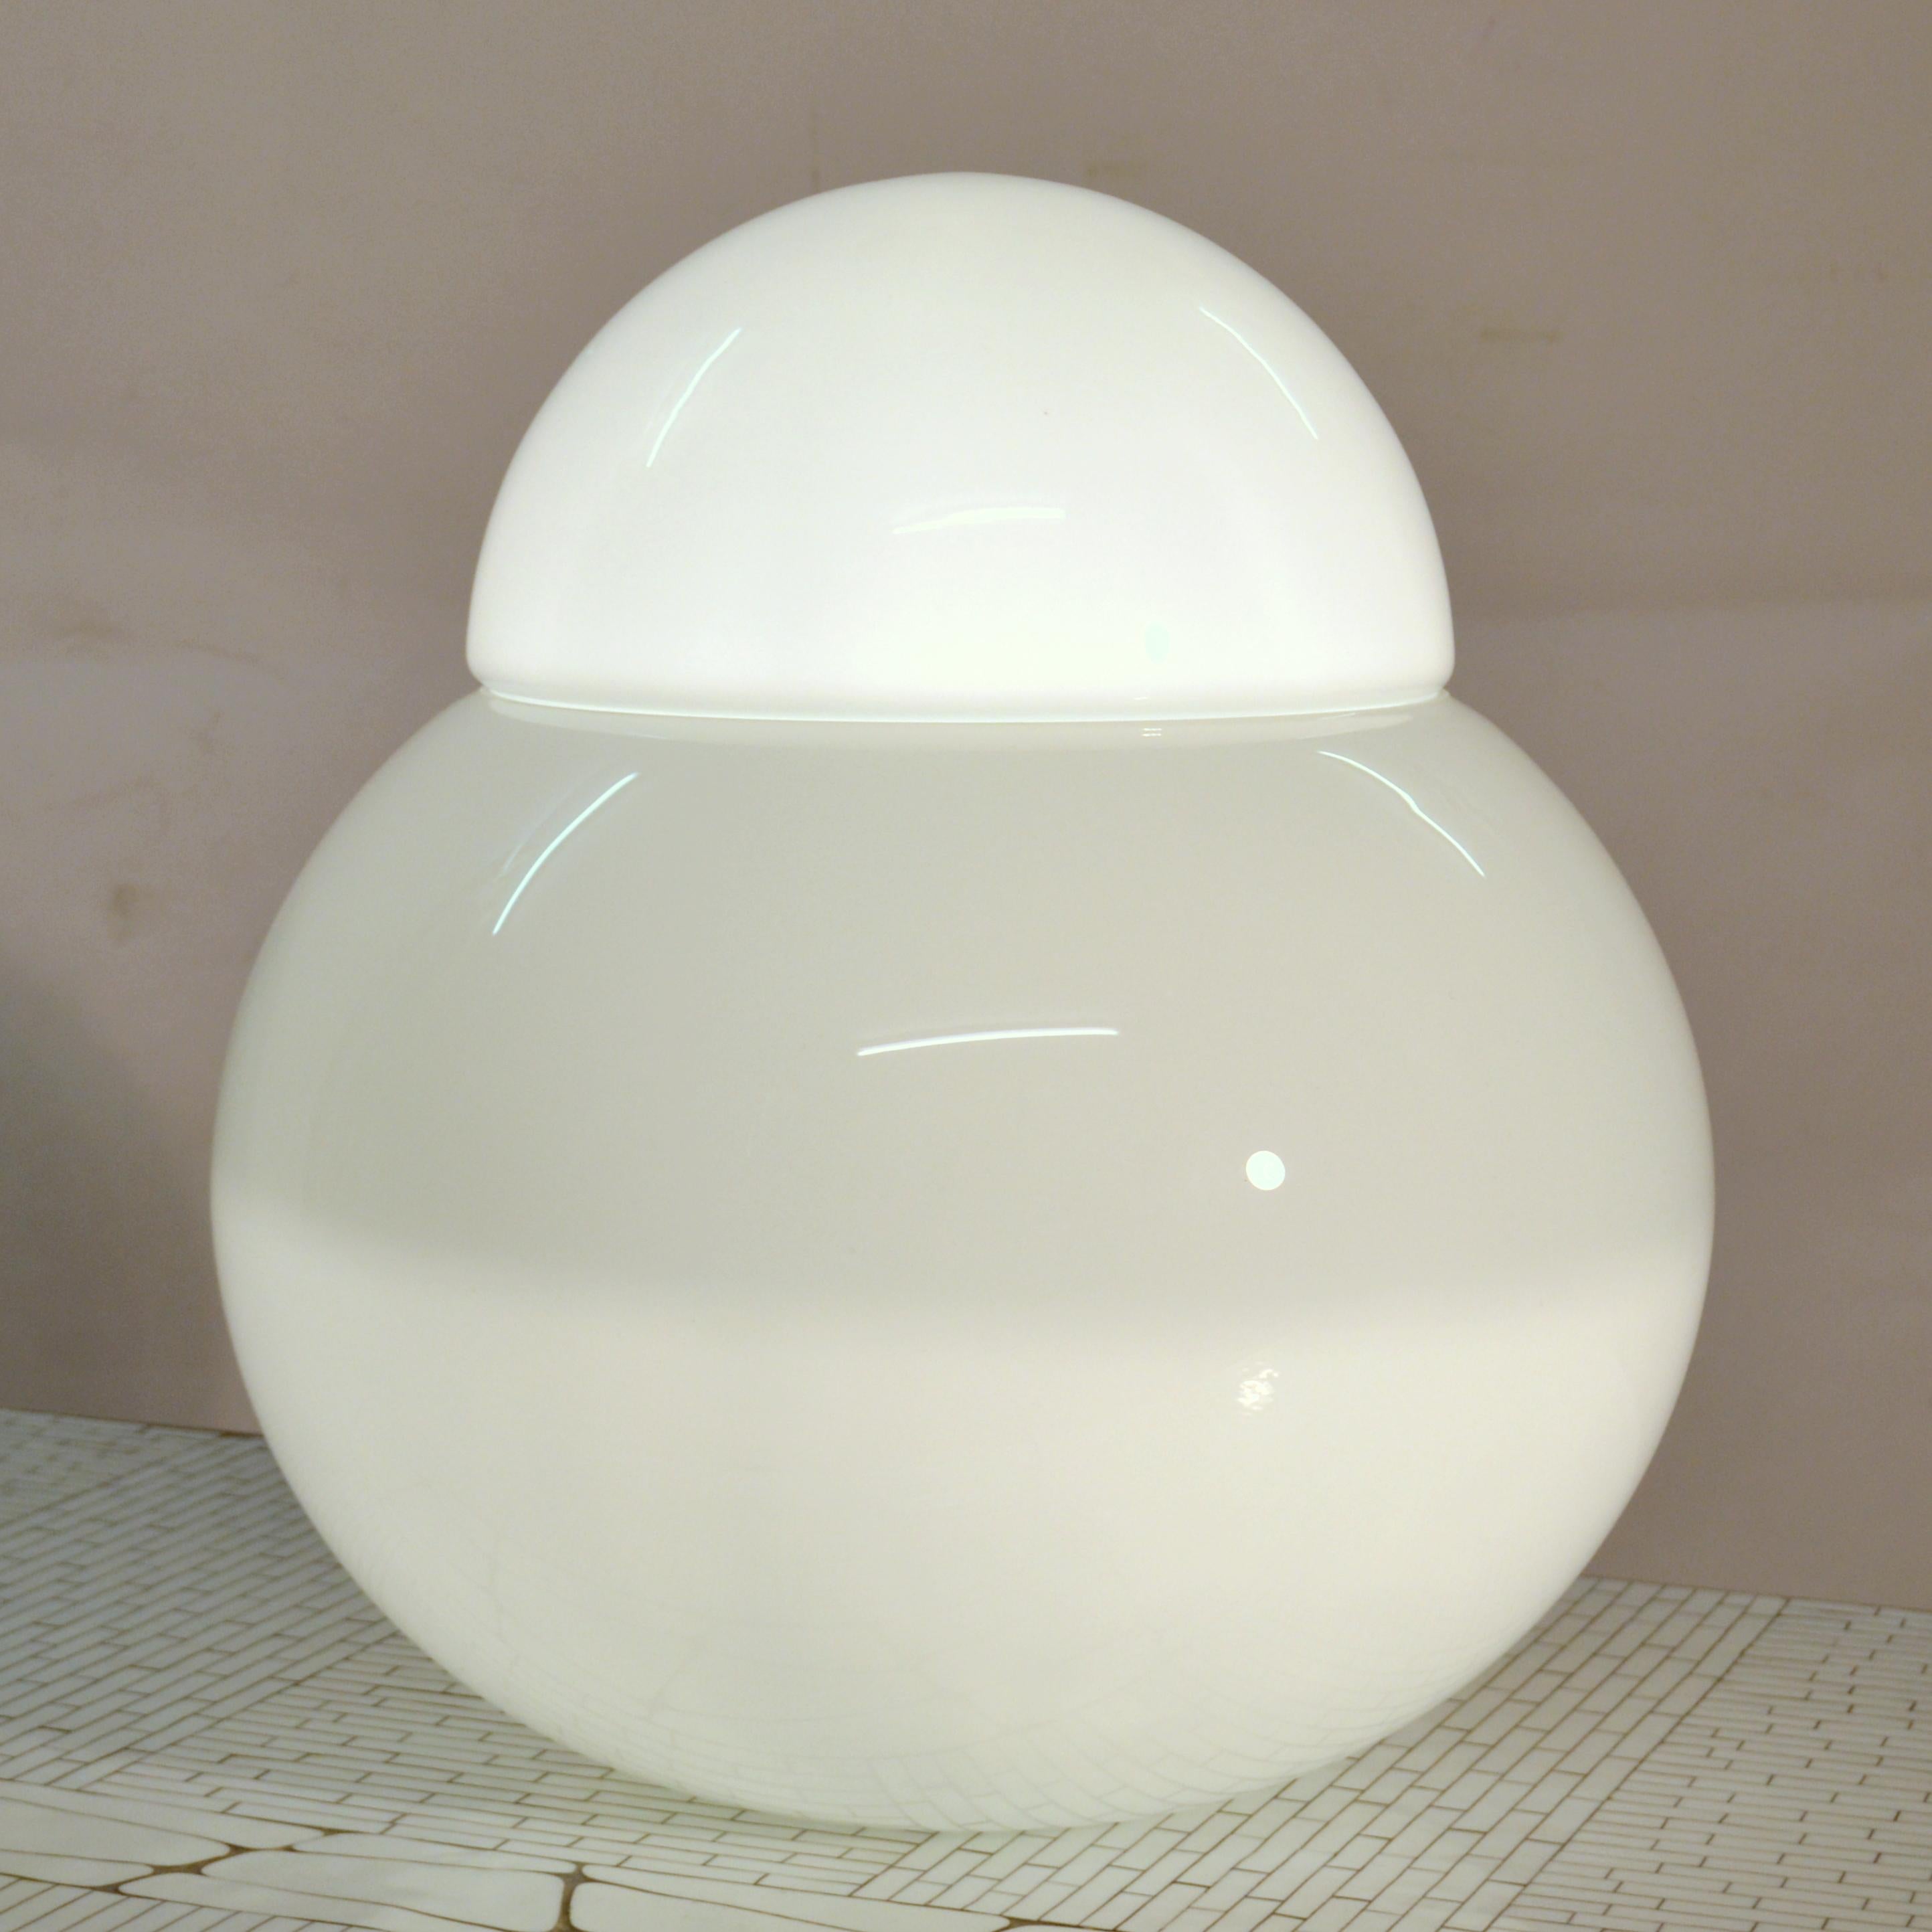 Lampe de table (ou lampadaire) sculpturale et minimale Daruma en verre soufflé blanc opalin par Fontana Arte 1960s Italie. Il s'agit de la plus grande des six tailles de ce modèle, composé de deux éléments. L'intérieur contient une ampoule qui est